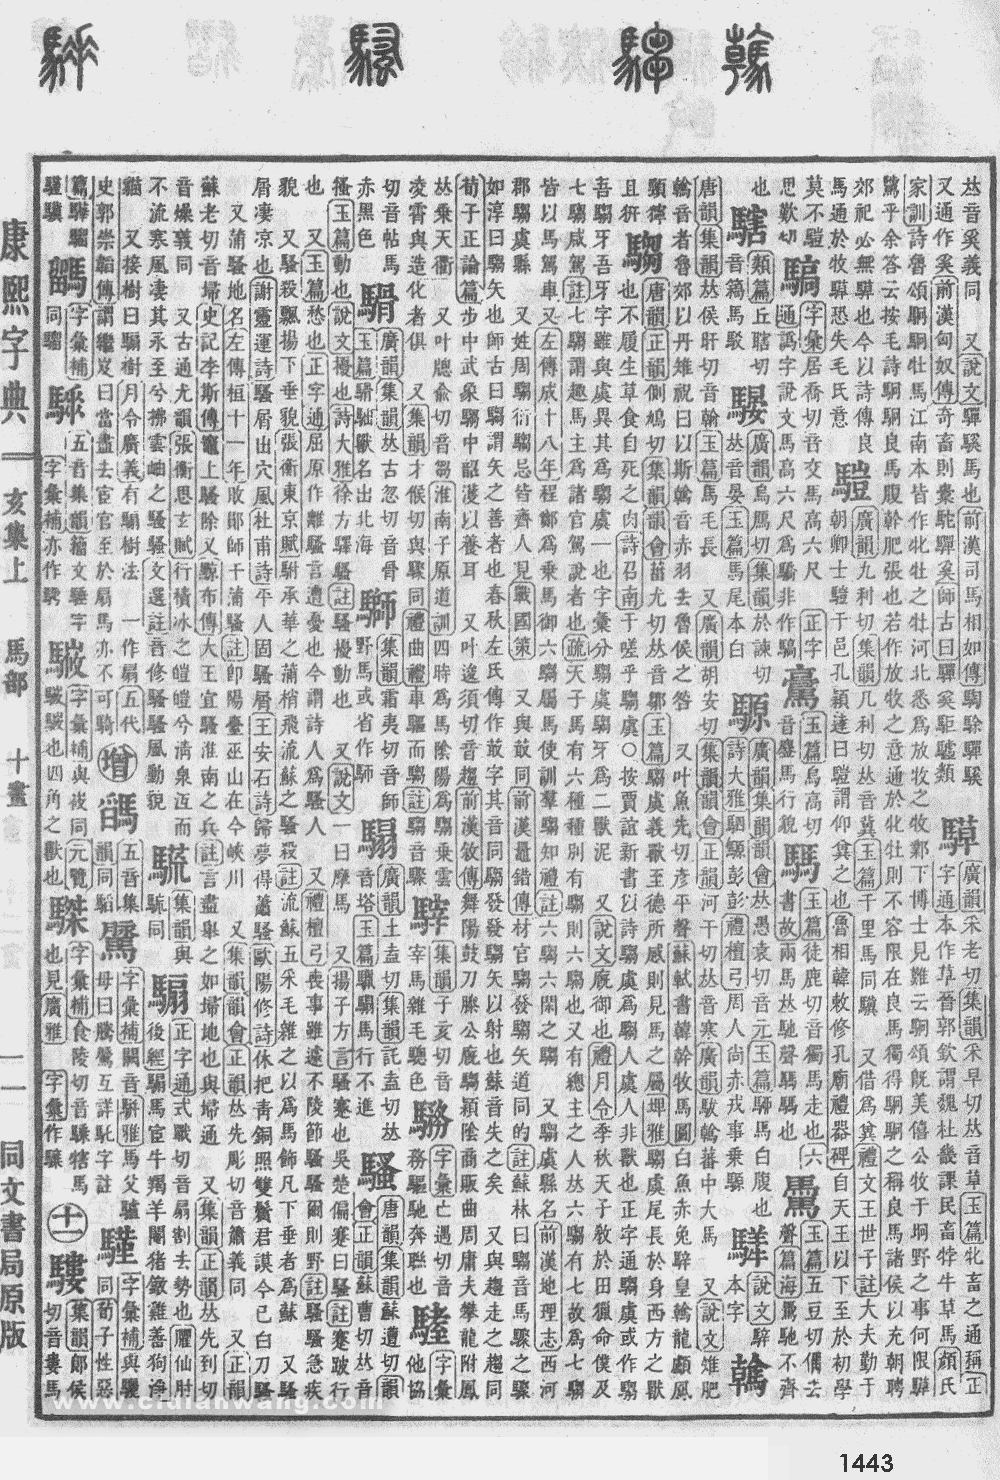 康熙字典掃描版第1443頁